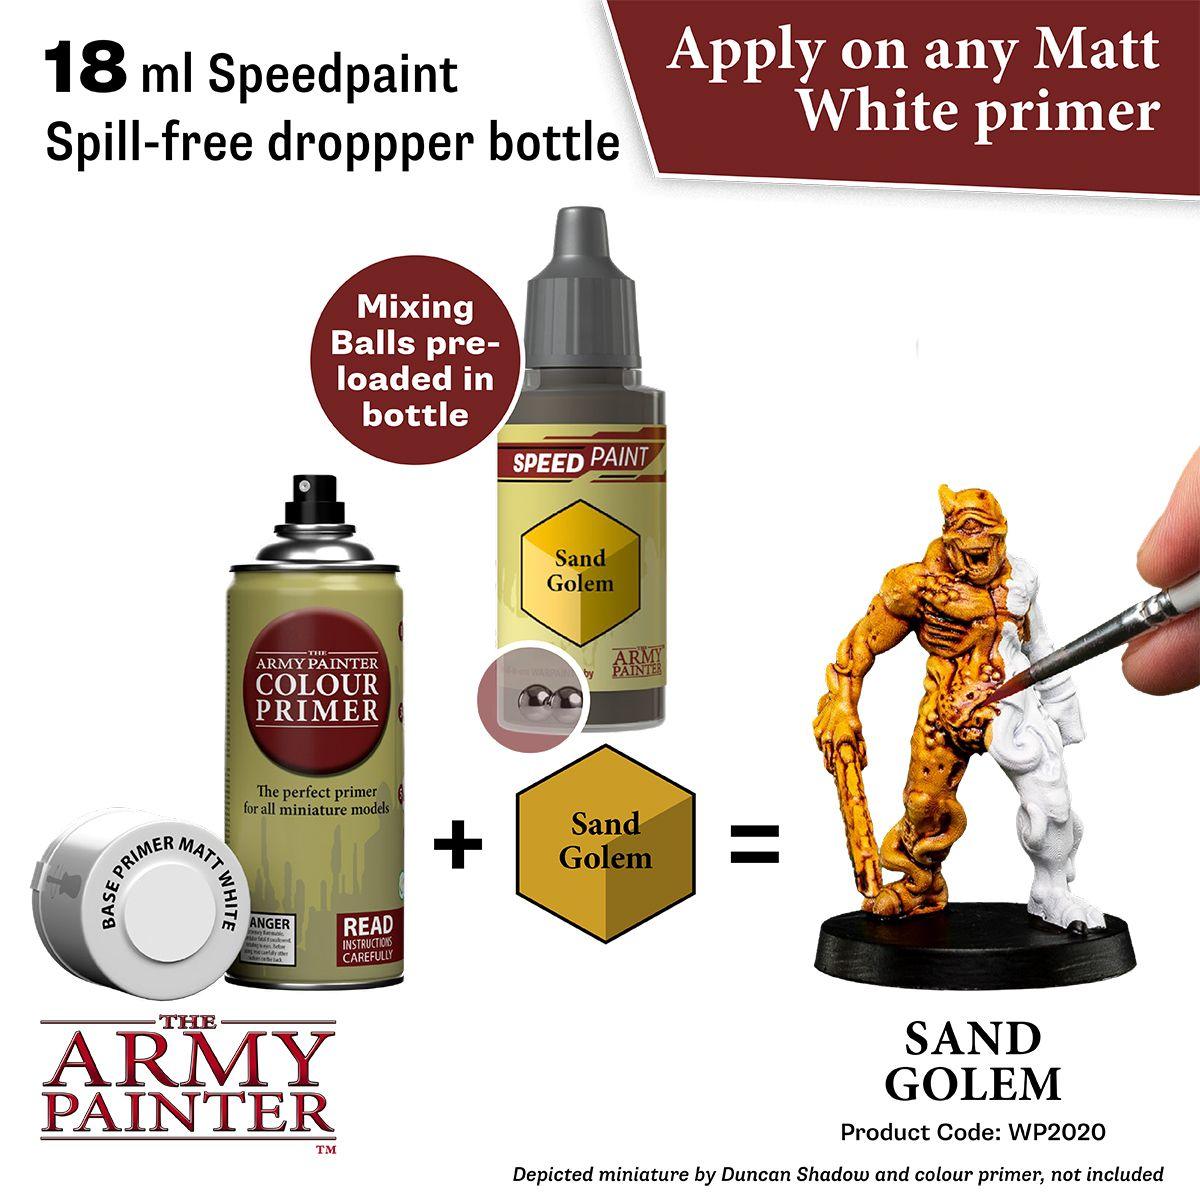 SP Sand Golem Speedpaint Army Painter WP2020